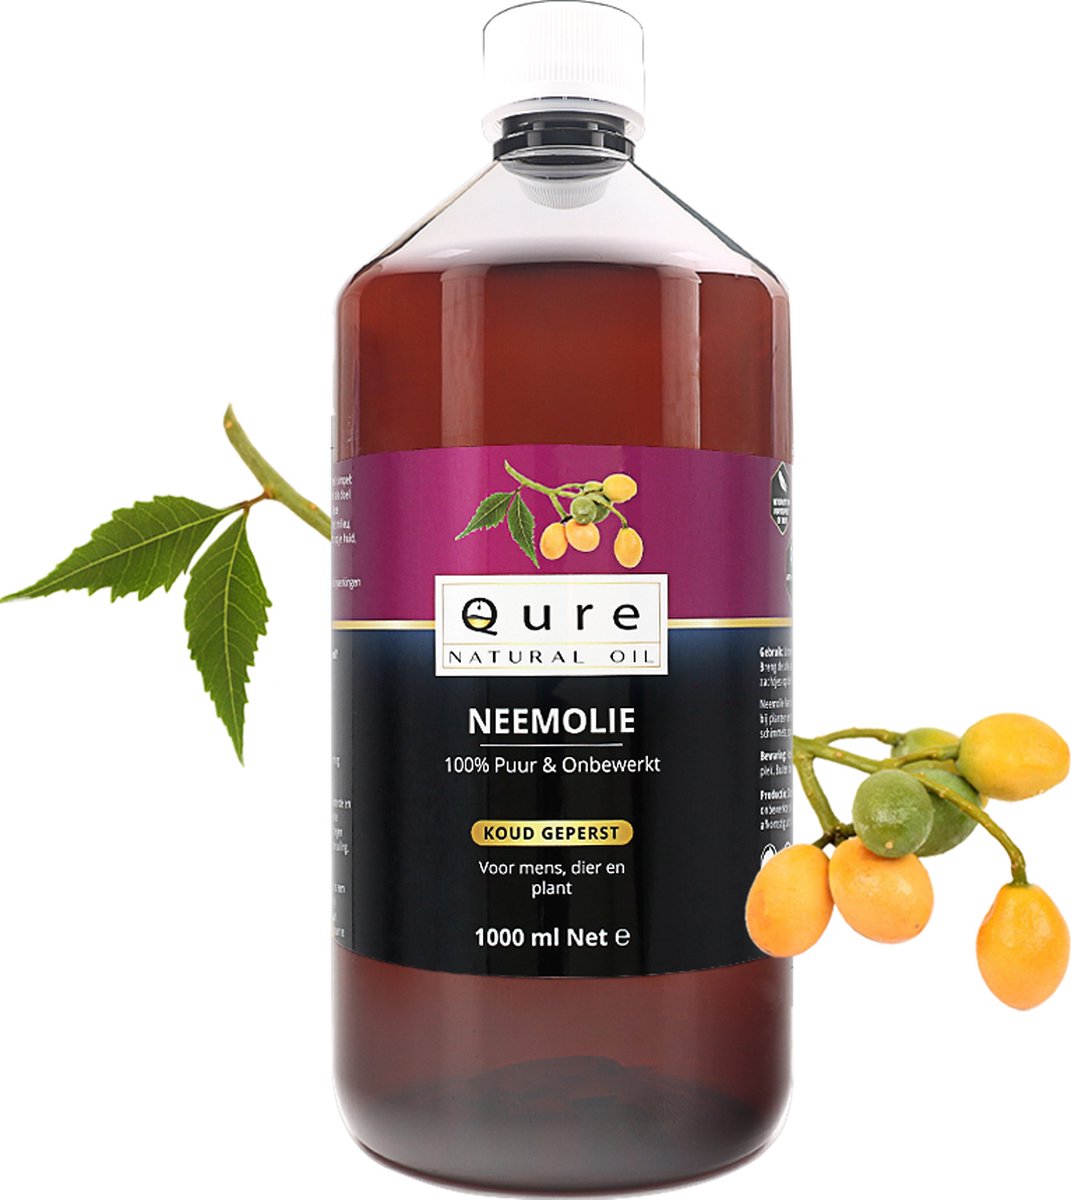 Neemolie 1 Liter | 100% Puur & Onbewerkt | Koudgeperste Neem Olie voor mens, dier en planten | Voordeelfles 1000ml